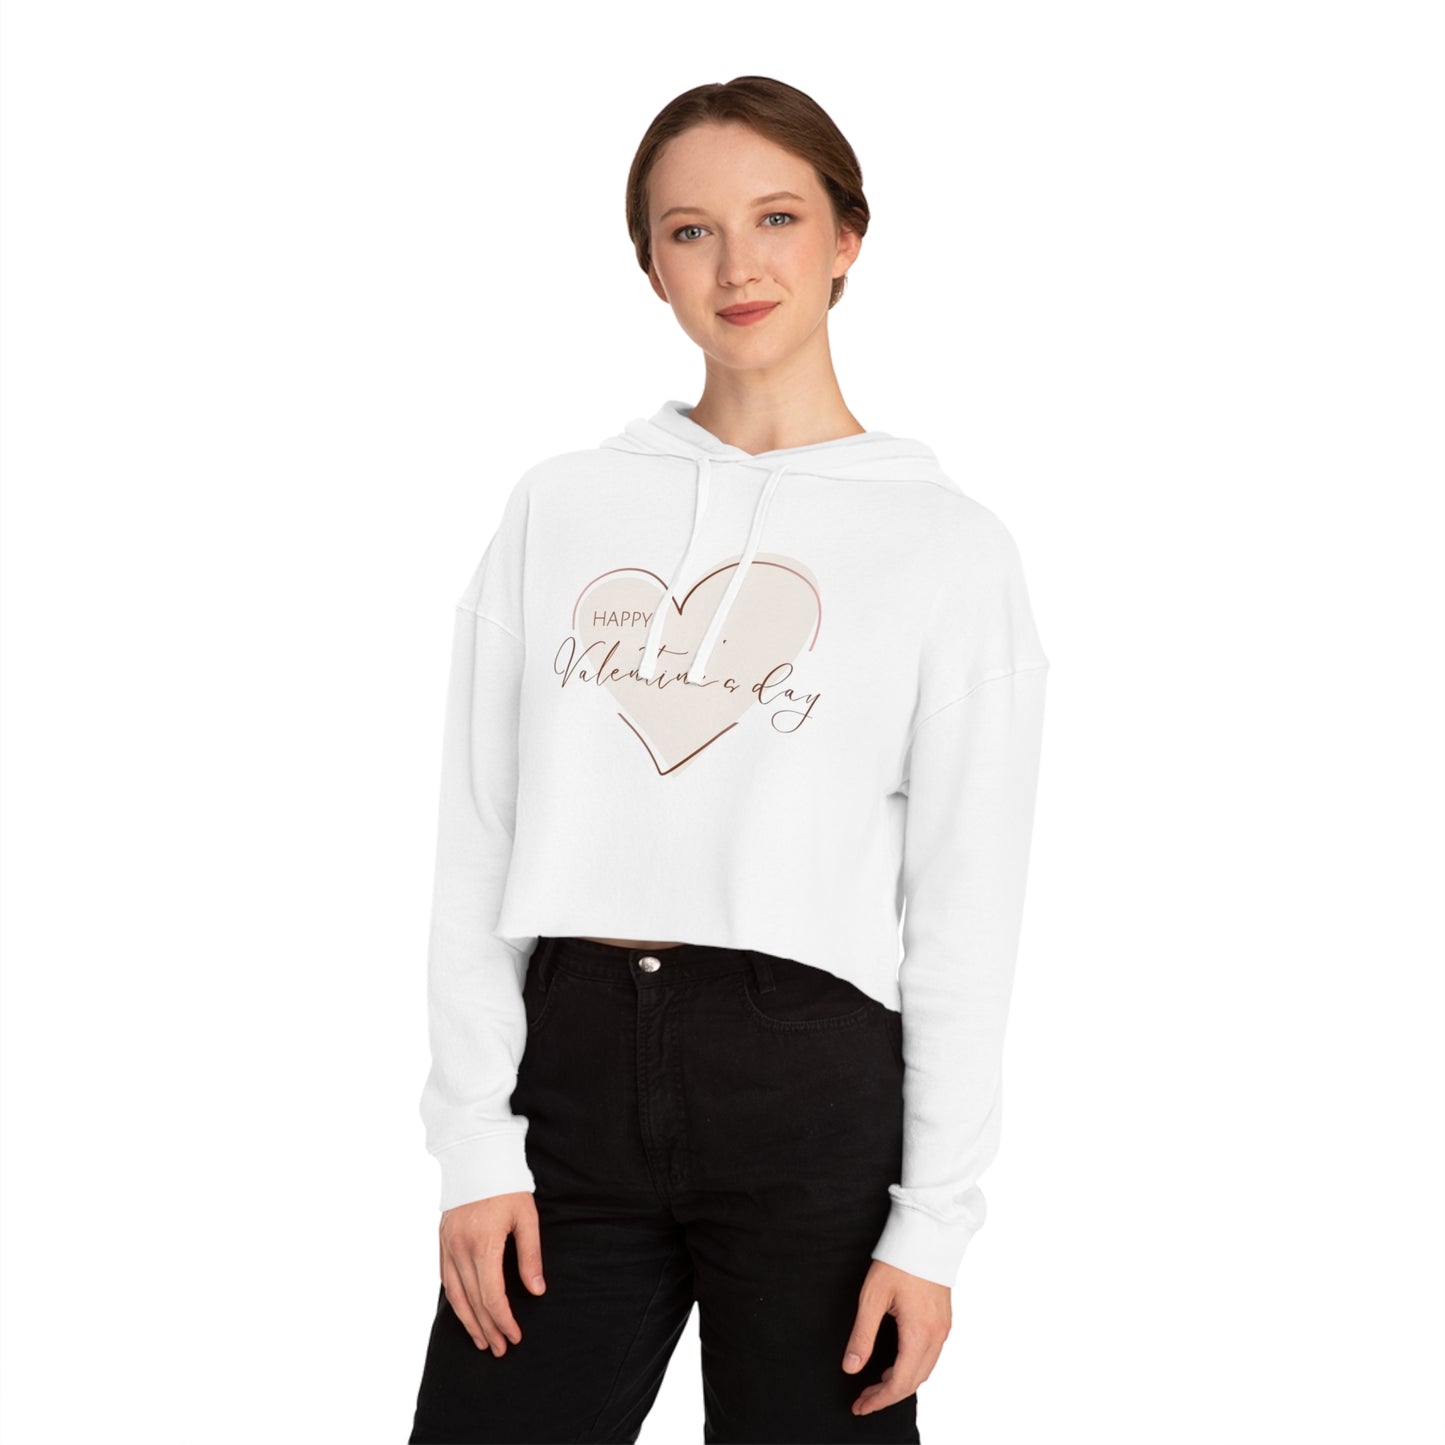 Valentine Sweatshirt for Her, Women’s Cropped Hooded Sweatshirt, Valentine Gift